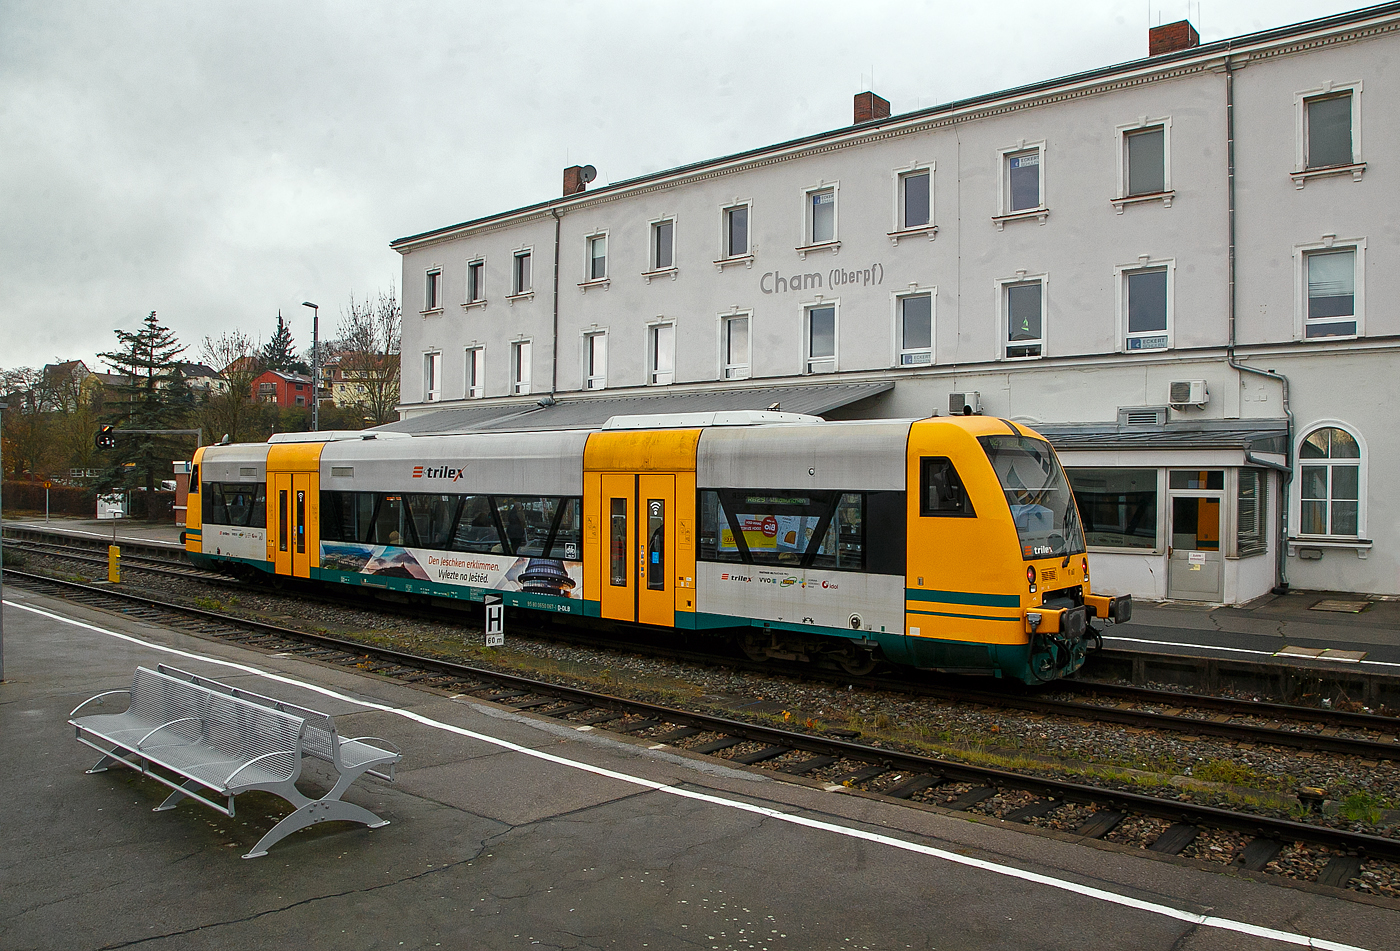 Der Trilex VT 067 alias 650 067-1 (95 80 0650 067-1 D-DLB) ein STADLER Regio-Shuttle RS1 der „oberpfalzbahn“ eine Marke der „Die Länderbahn GmbH (DLB)“, steht am 22.11.2022 in Cham (Oberpfalz), als RB 29 (ex OPB 5) nach Waldmünchen, zur Abfahrt bereit. Dieser ist hier noch in „trilex“-Farbgebung, die auch zur „Die Länderbahn GmbH (DLB)“ gehört.

Die 13 STADLER Regio-Shuttle RS1 (Baujahr 2000/03) der „oberpfalzbahn“ wurden 2013/2014 modernisiert (komplett entkernt und umgebaut). Für die kleinen Fahrgäste ist eine Kinderspielecke entstanden. Verbessert wurde auch die Fahrgastinformation im Fahrzeug. Neue Monitore wurden im Bereich des Aus- und Einstiegs eingebaut und informieren über den aktuellen Verlauf der Fahrt und die weiteren Anschlüsse. Zwei Mehrzweckbereiche pro Fahrzeug bieten ausreichend Platz für bis zu sechs Fahrräder, Kinderwagen und Gepäck. Der stufenlose Einstieg ermöglicht auch mobilitätseingeschränkten Personen einen bequemen Zugang. Das Fahrzeug bietet Platz für ca. 155 Fahrgäste (72 Sitzplätze). 

Der Antrieb erfolgt über 2 MAN Dieselmotoren mit je 257 KW (350 PS) Leitung hydromechanisch über 2 Voith-Diwabus Getriebe U 864, die Höchstgeschwindigkeit beträgt 120 km/h.